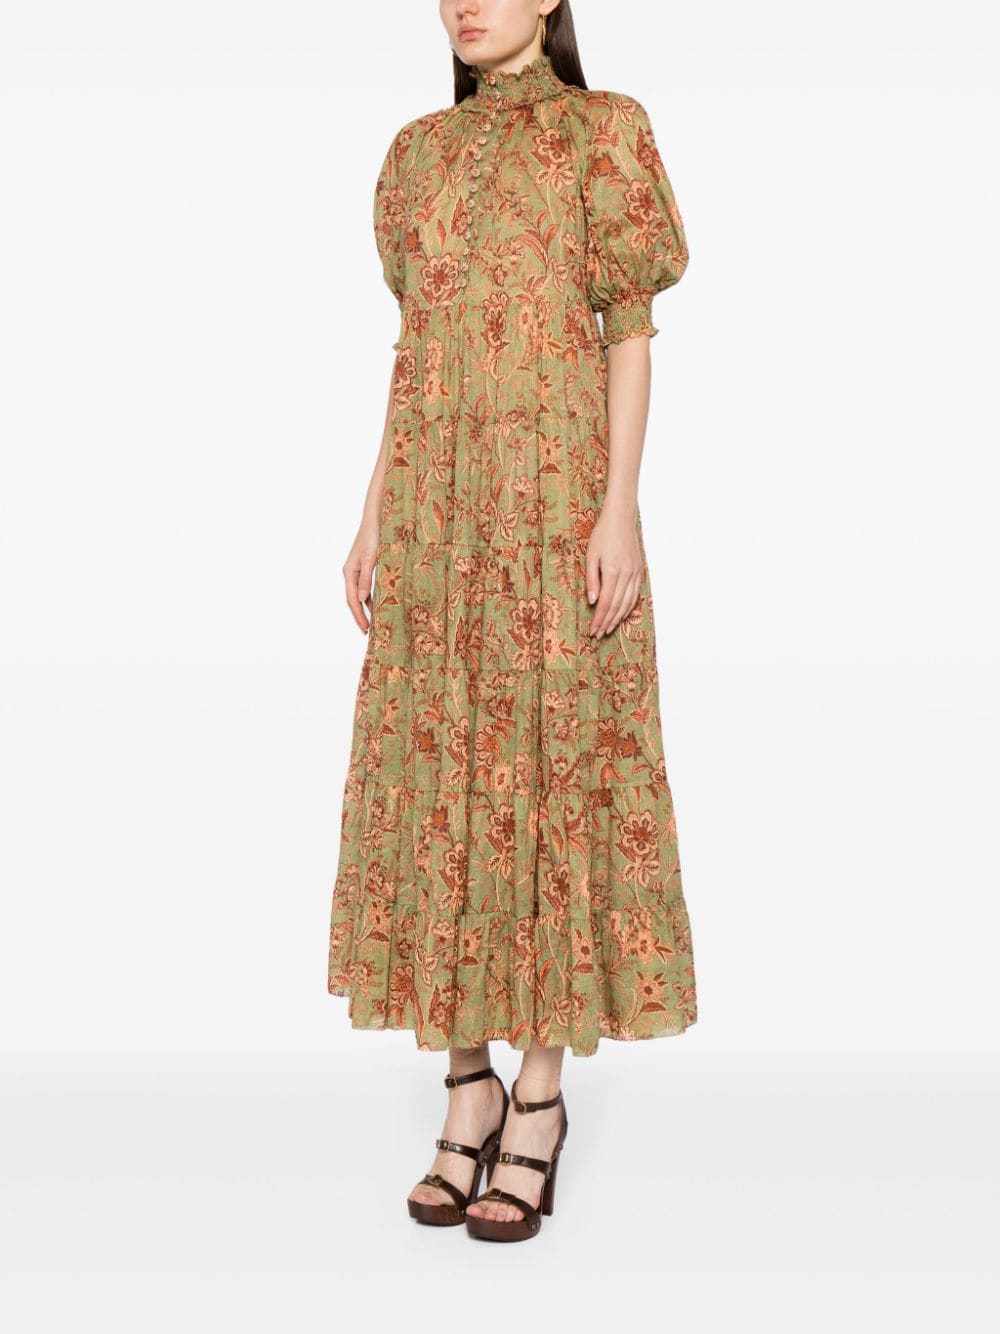 Junie Tiered Swing Dress in Sage/Brown Floral